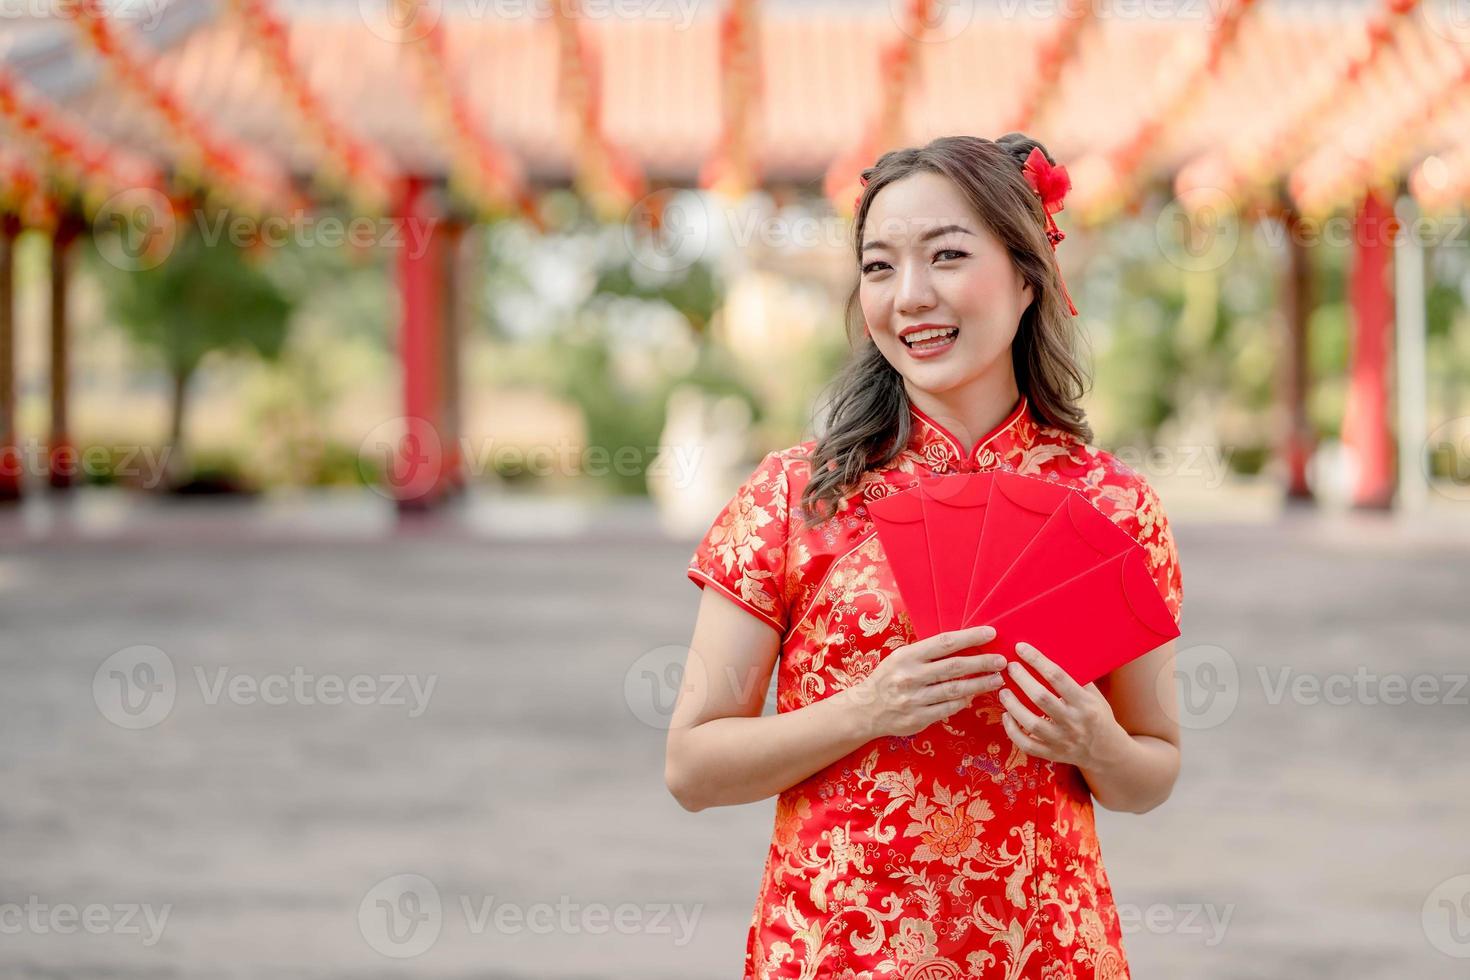 joven mujer asiática sonriendo felizmente sosteniendo ang pao, sobres rojos usando cheongsam luciendo confiada en el templo budista chino. celebrar el año nuevo lunar chino, vacaciones de temporada festiva foto